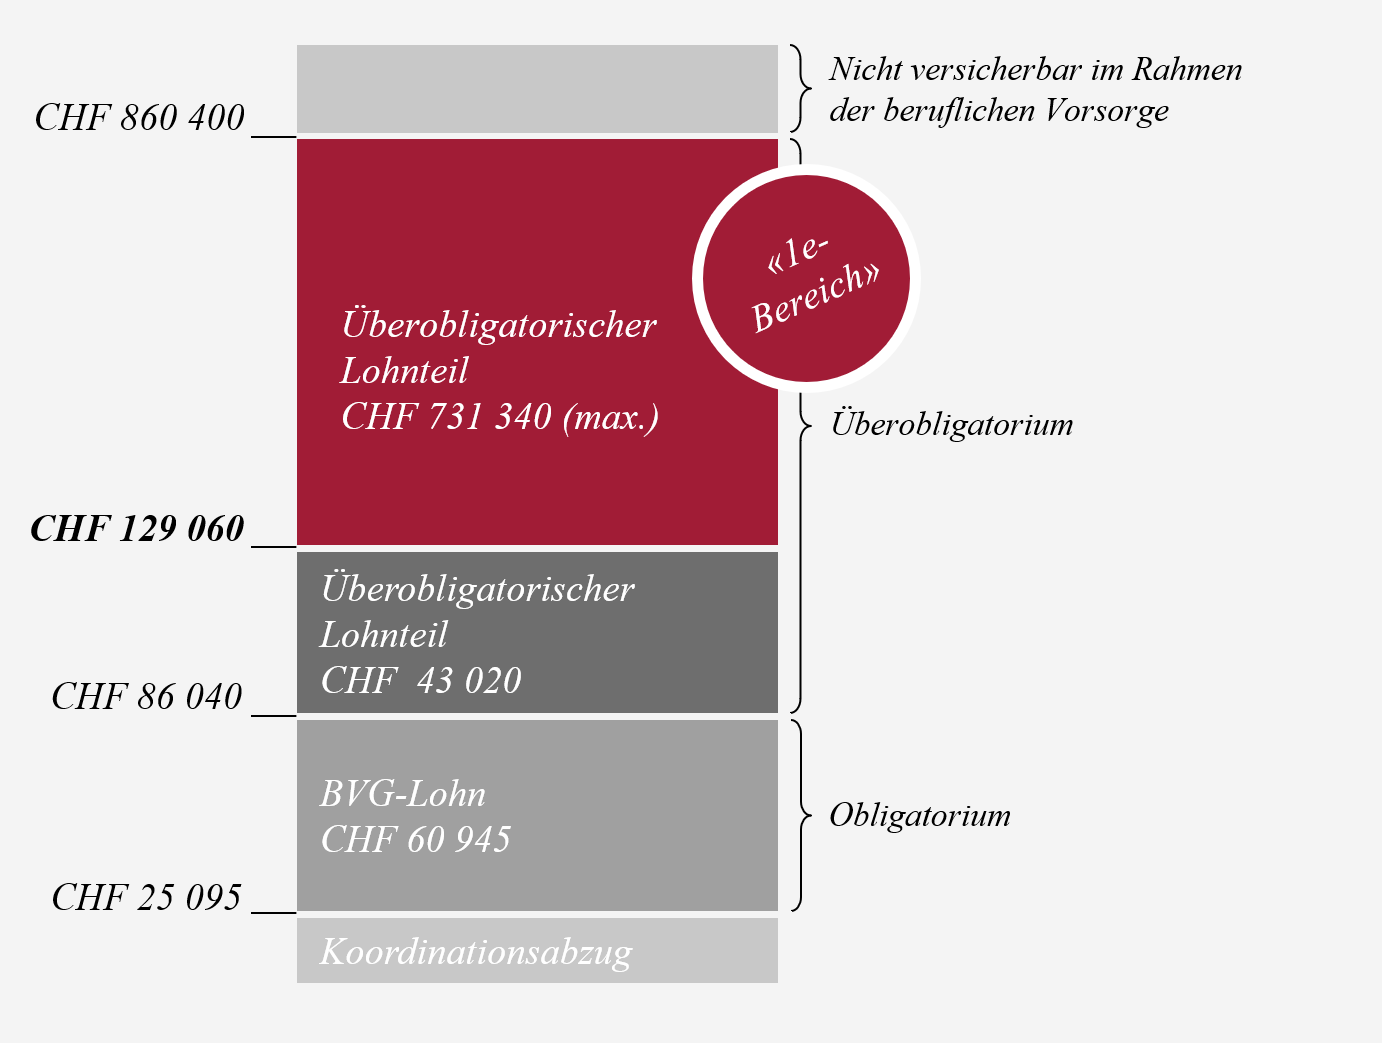 Obligatorium: Löhne zwischen CHF 25 095 und CHF 86 040, der 1e-Bereich gilt ab CHF 129 060